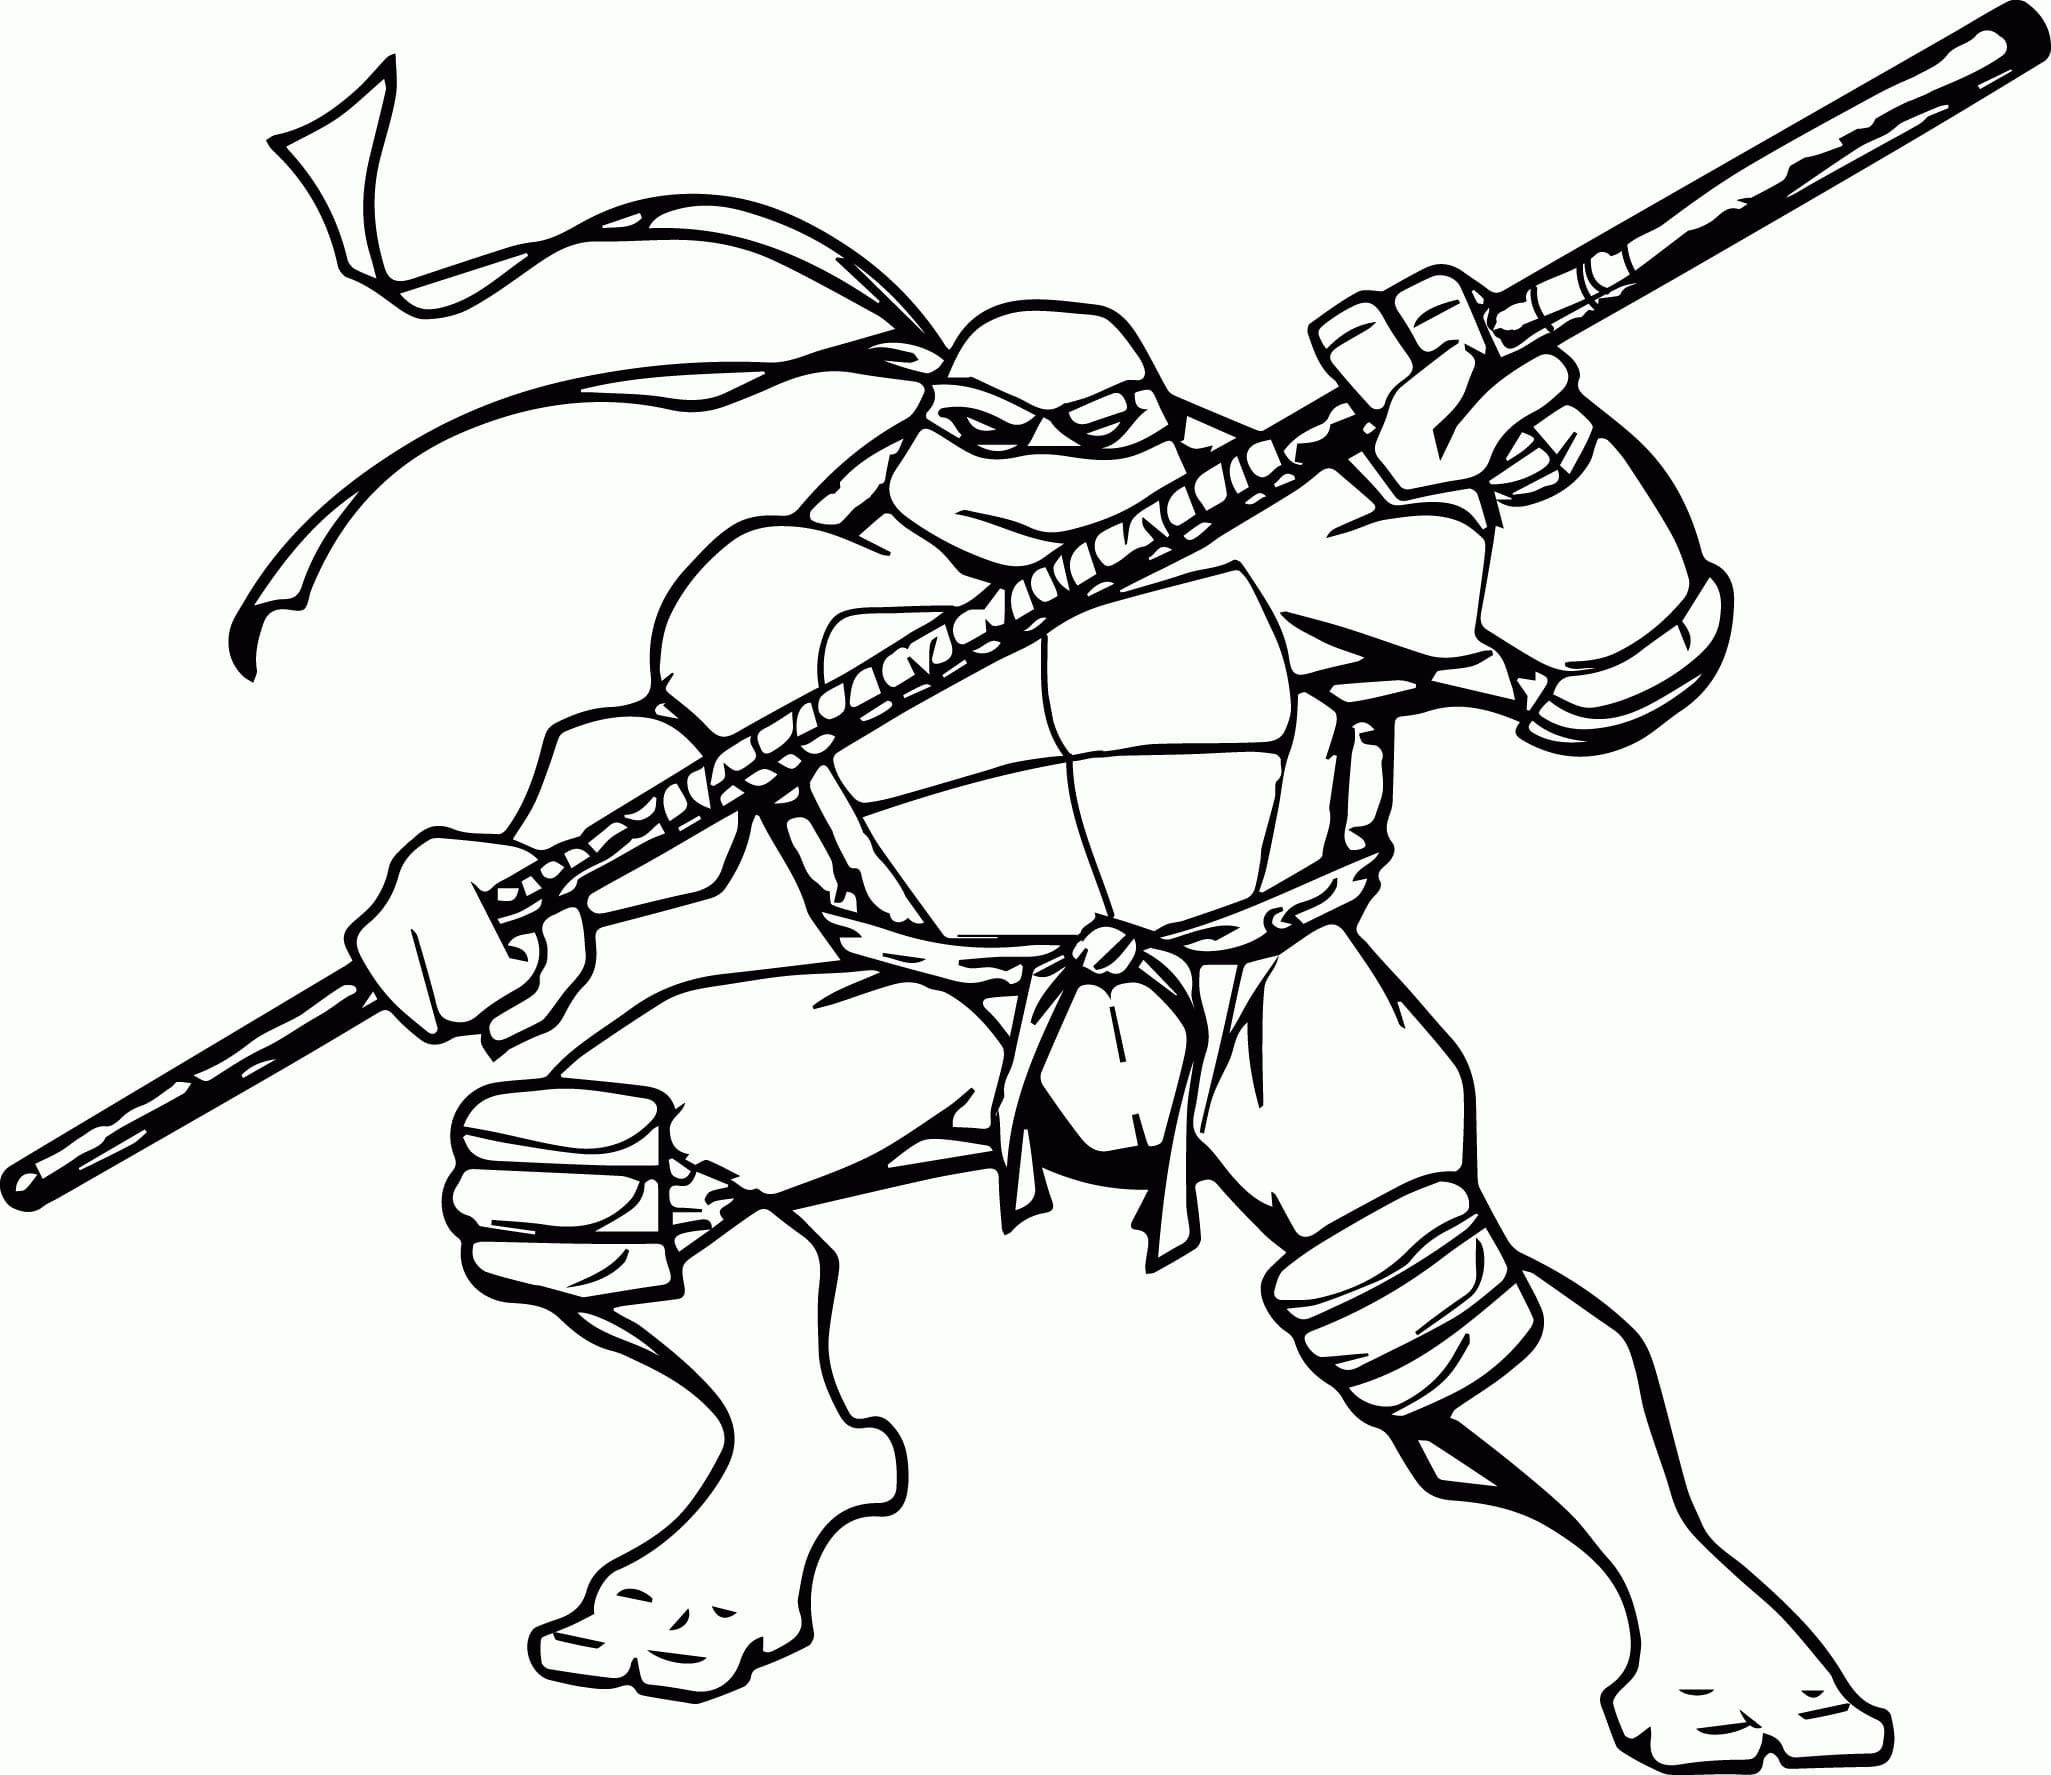 닌자 거북이가 지휘봉을 들고 있다 coloring page